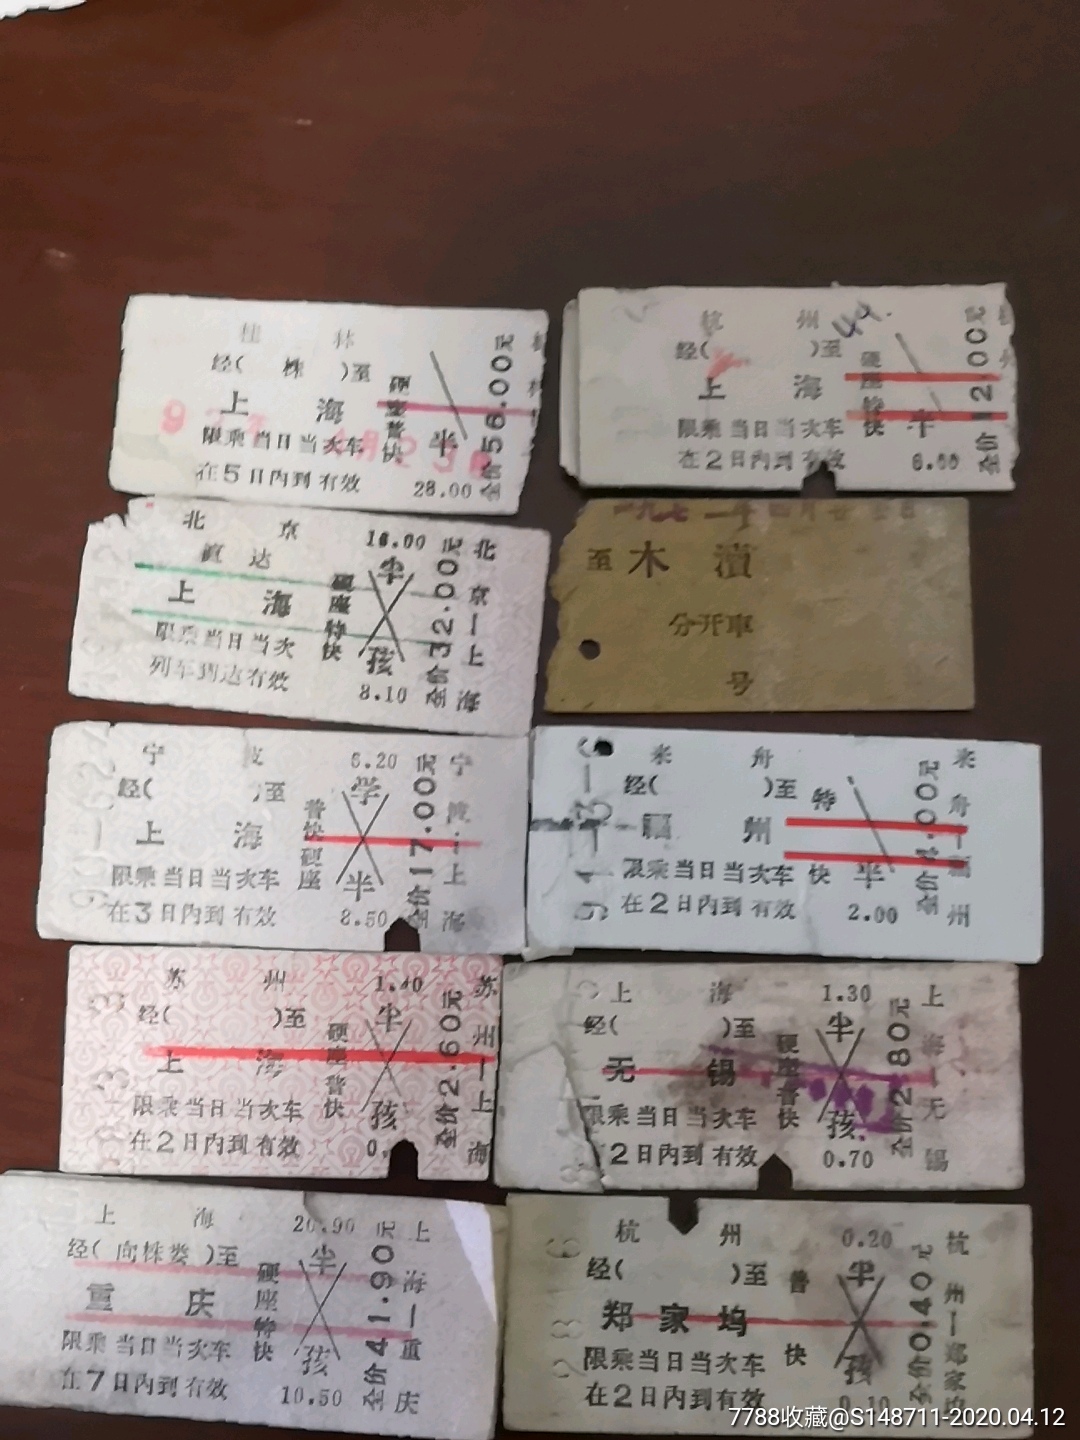 96年上海一杭州特快火车票_火车票_作品图片_收藏价格_7788纸艺